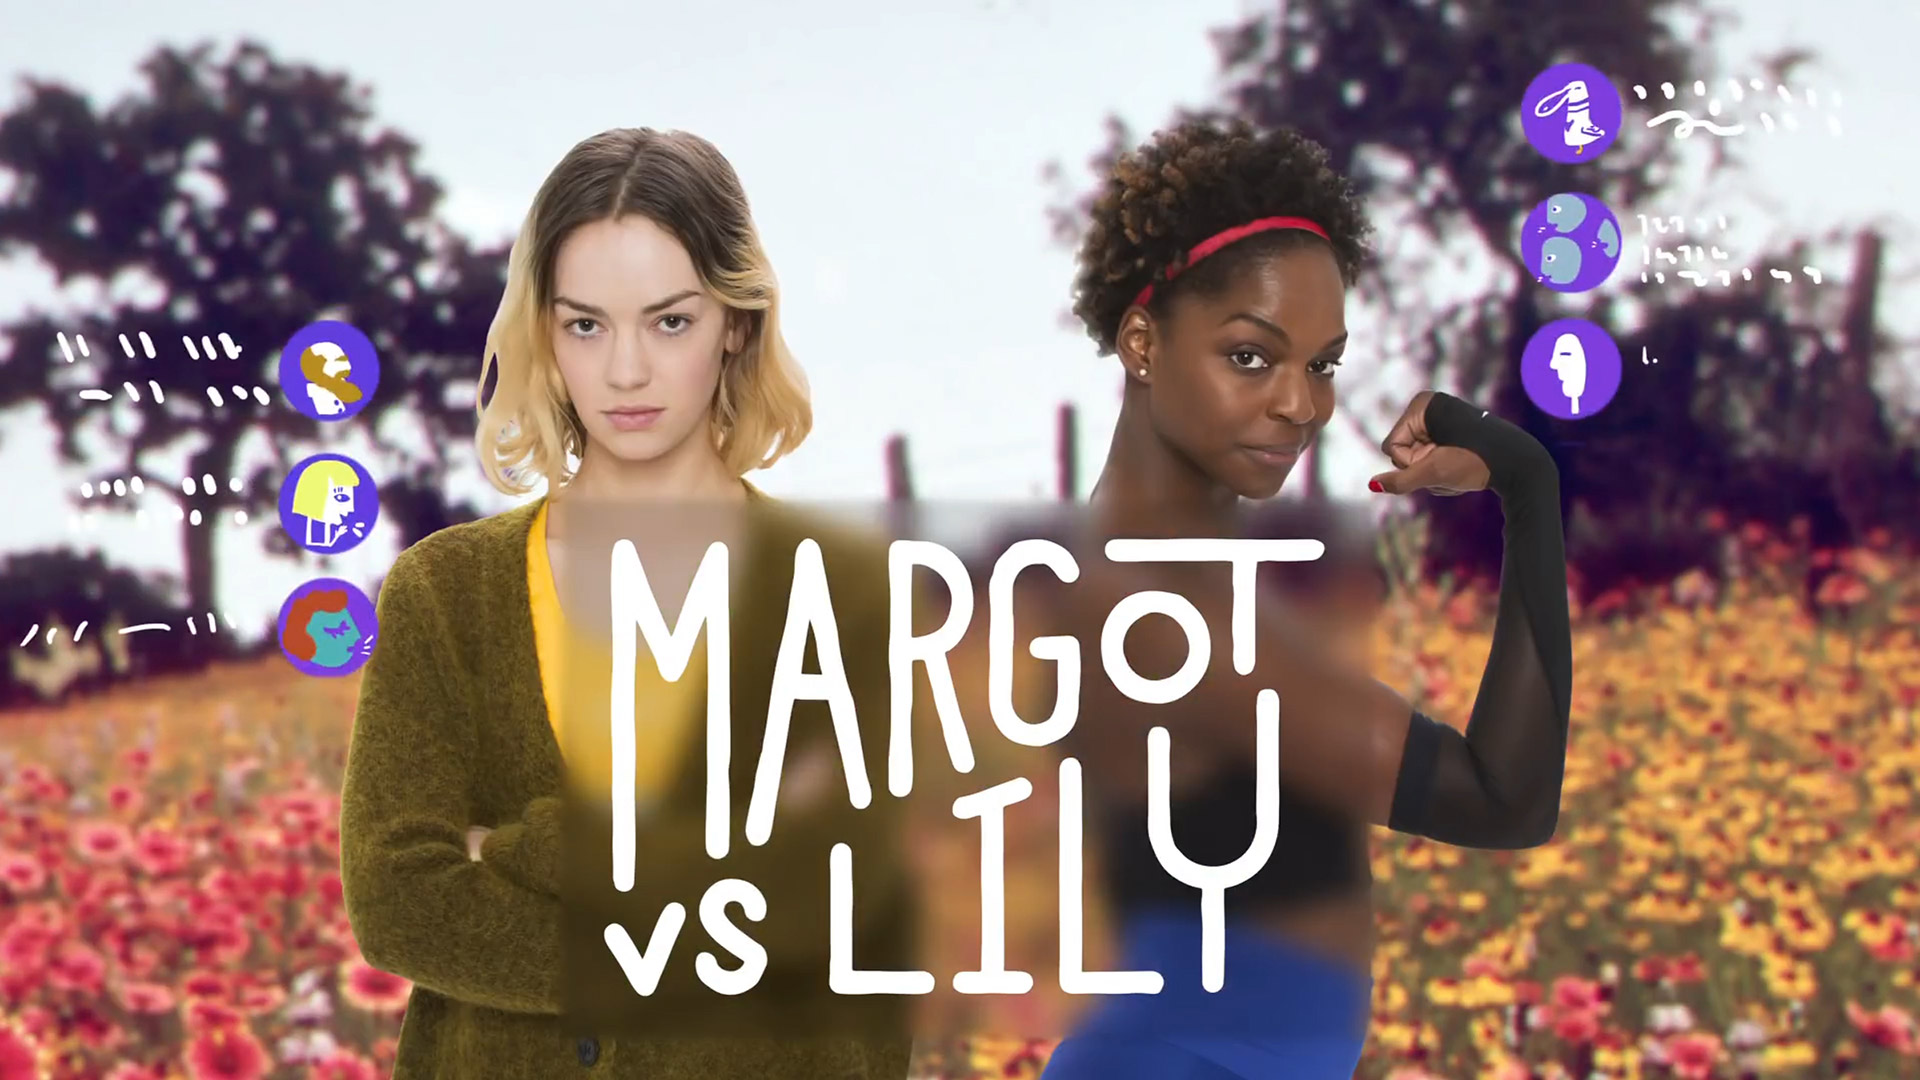 Margot vs. Lily